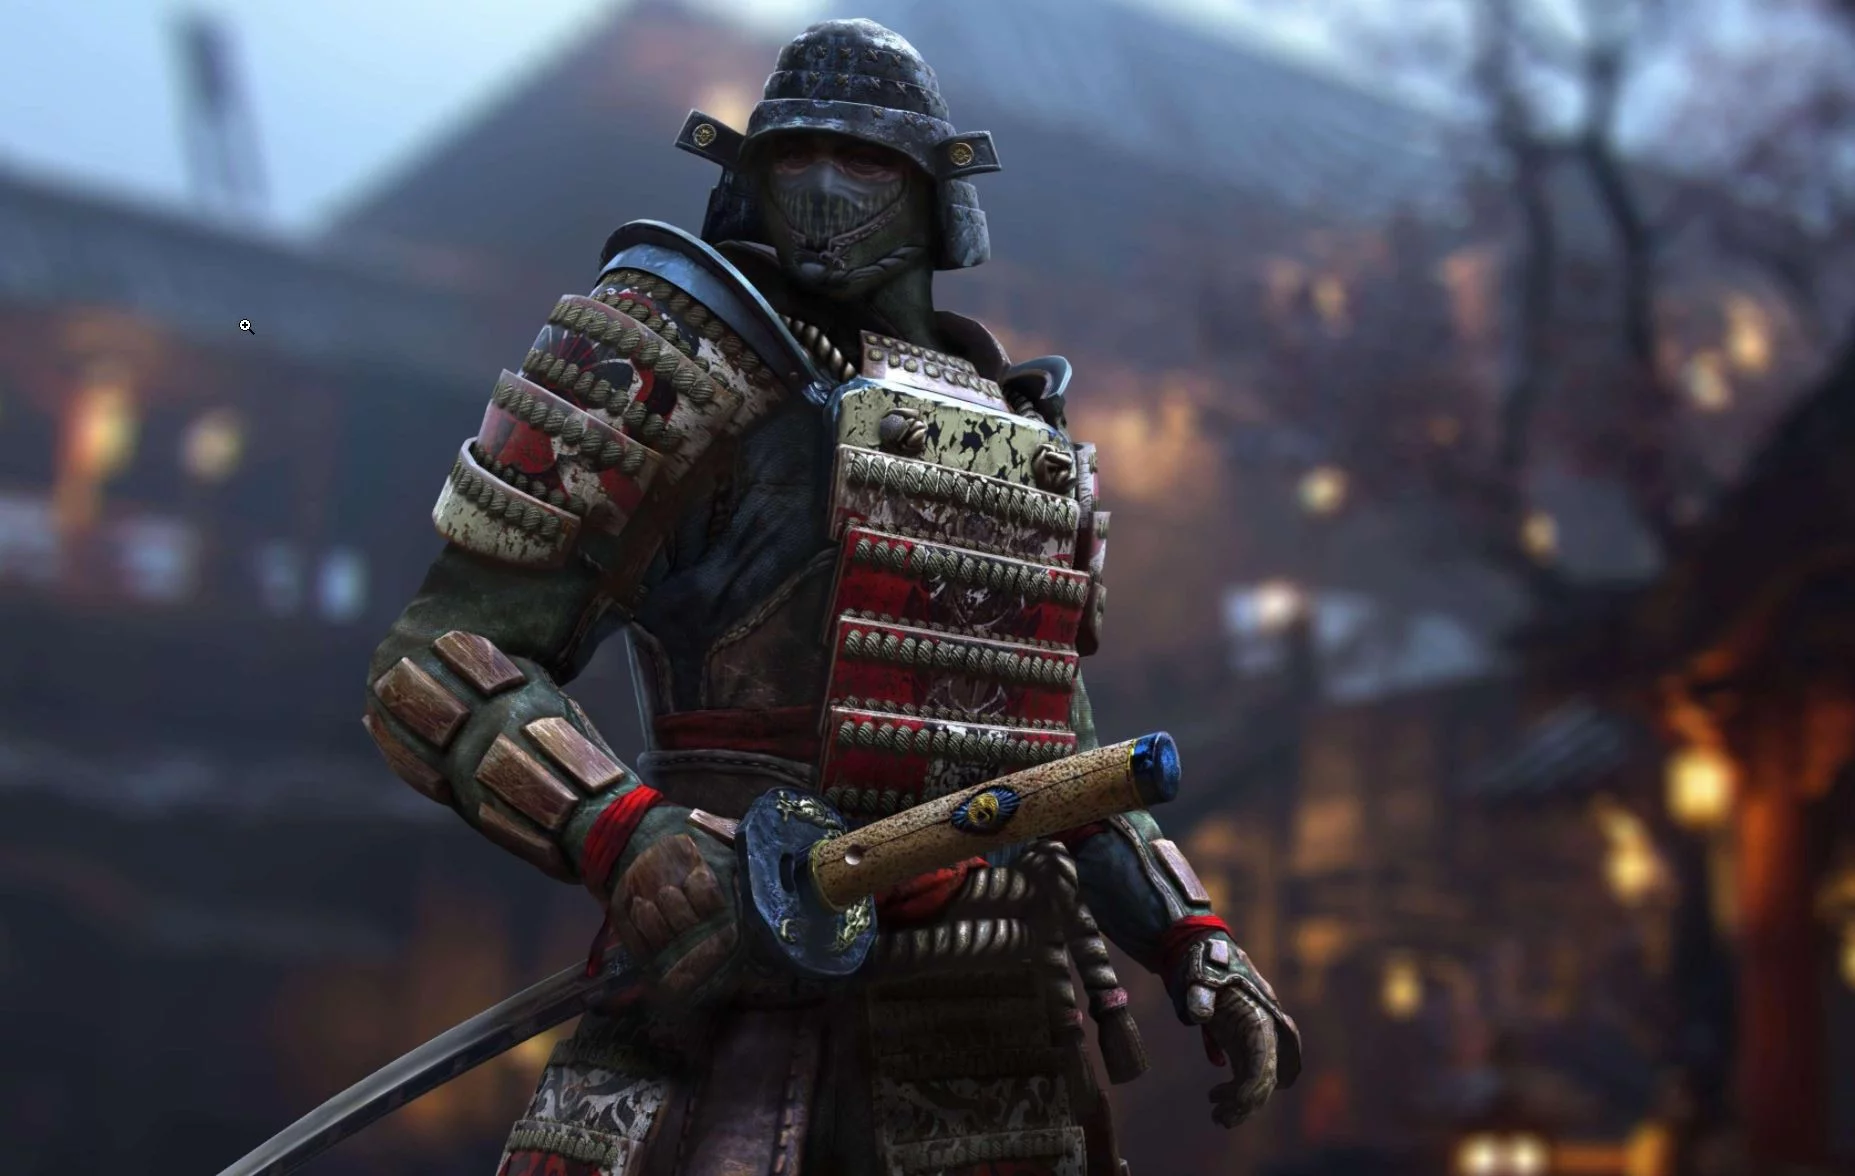 Orochi Samurai Unit Guide - Conqueror's Blade